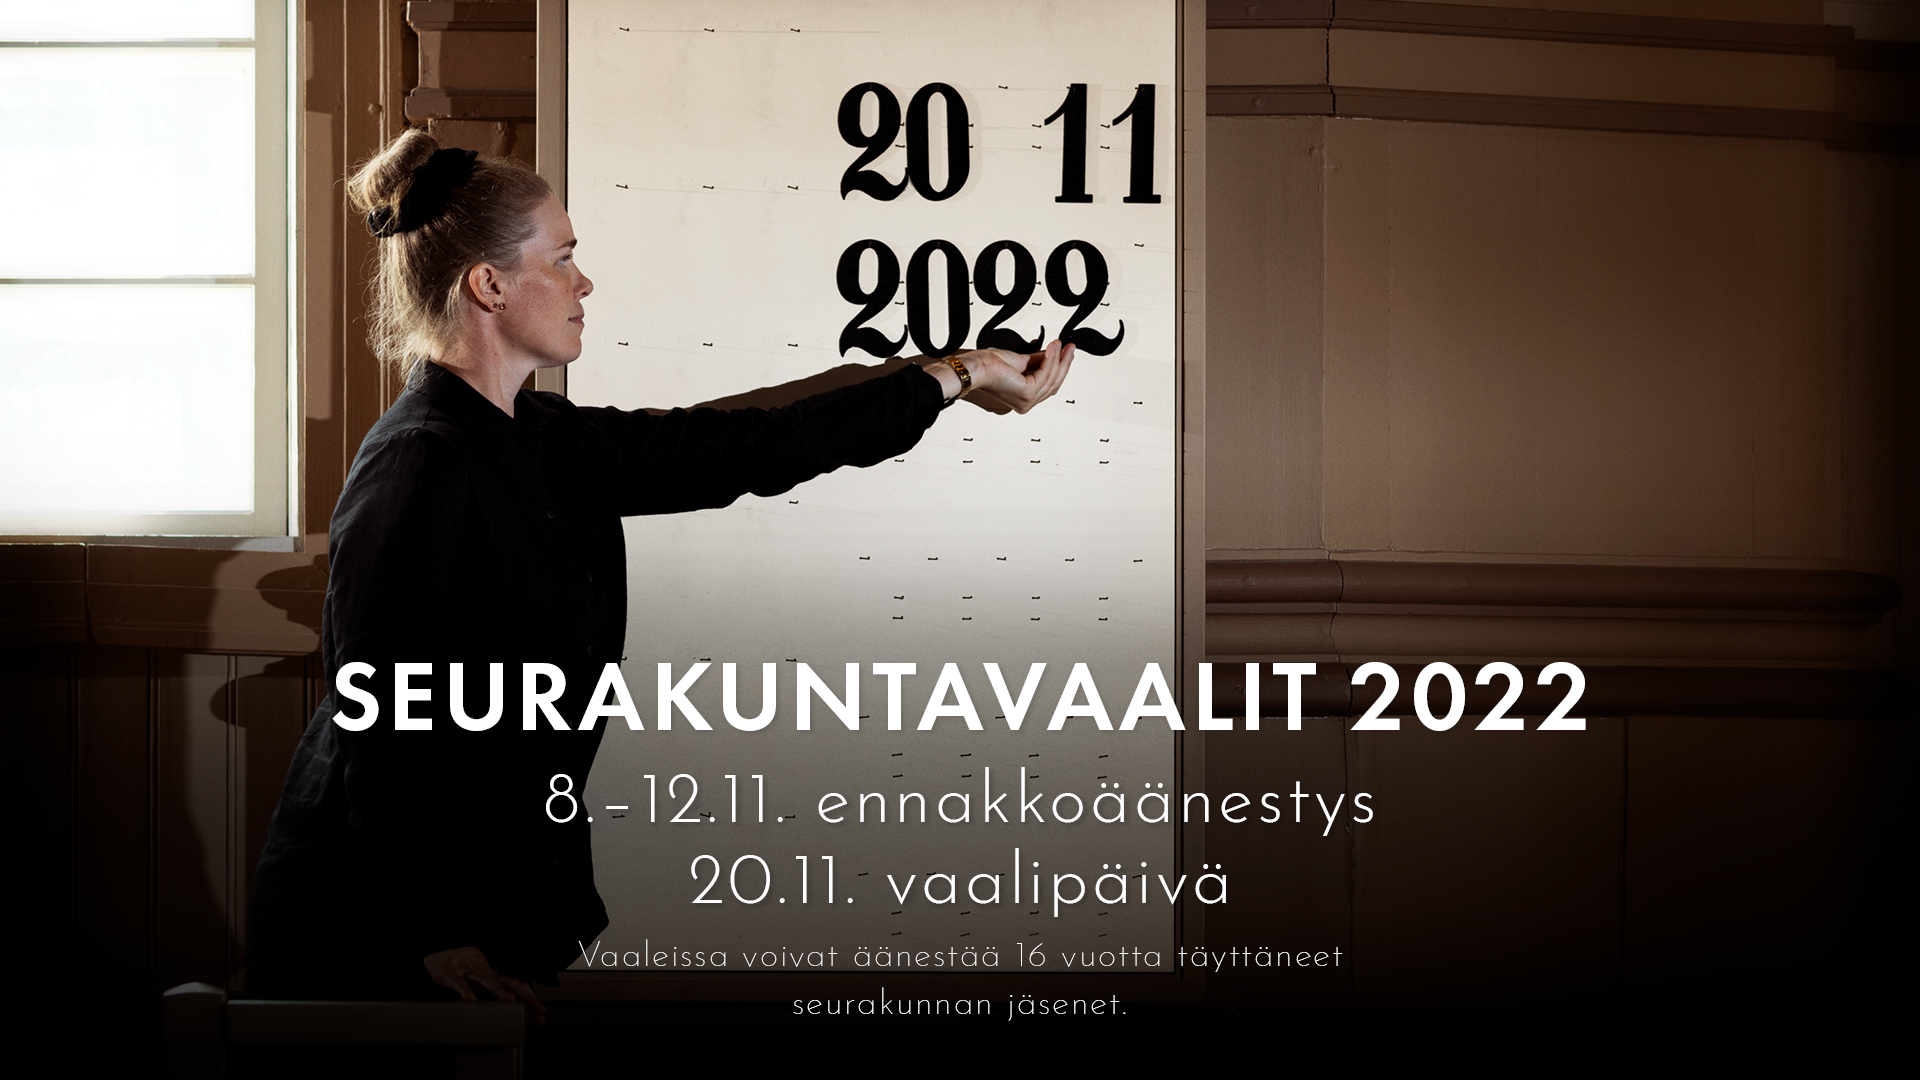 Seurakuntavaalien mainoskuva, jossa suntio asettelee virsitauluun numerot 20 11 2022 eli vaalipäivämäärän.